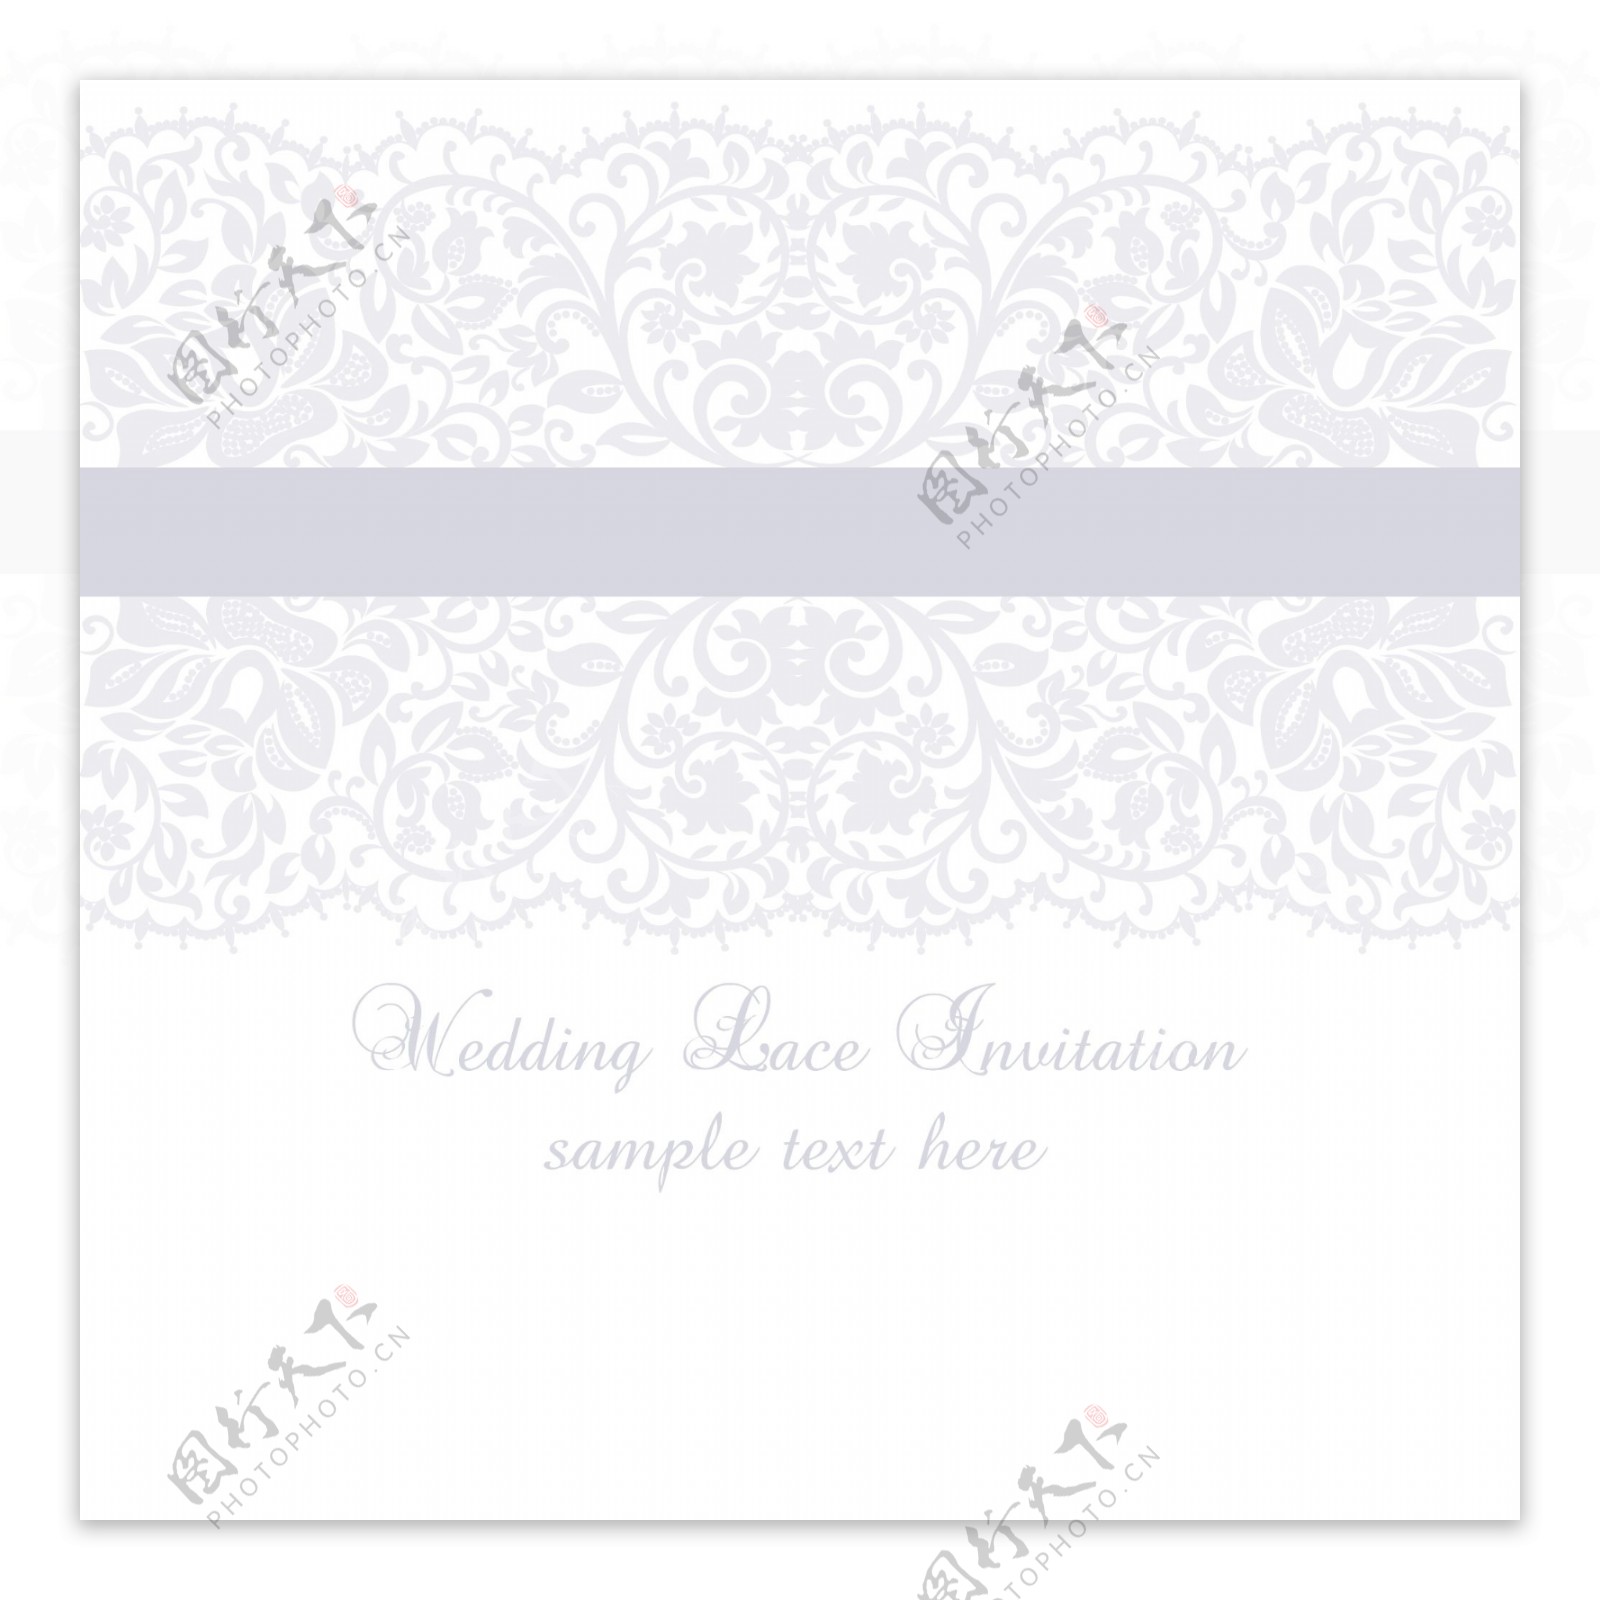 淡紫色婚礼花边邀请卡模板矢量素材